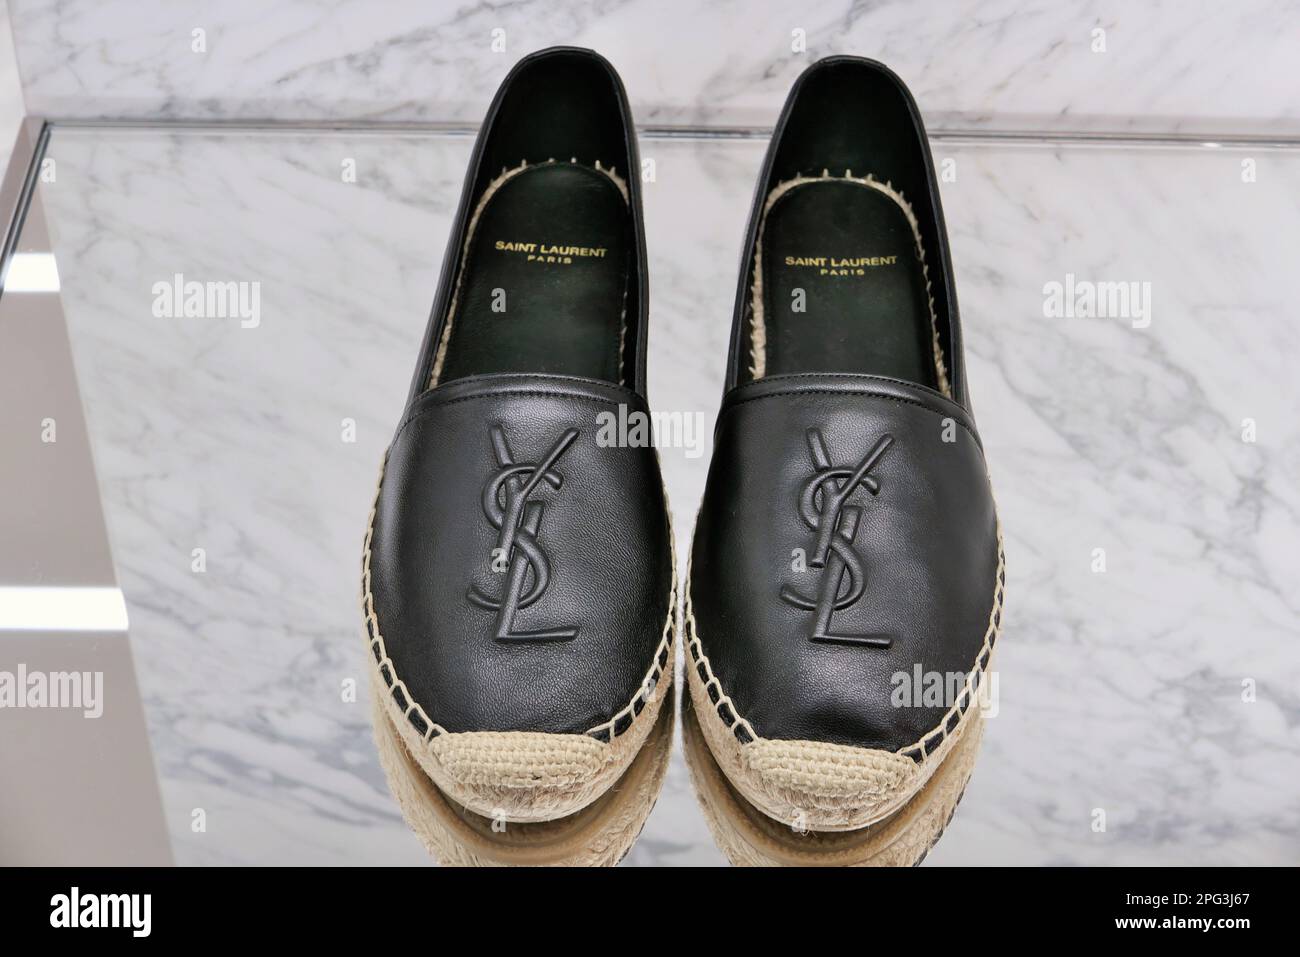 Saint laurent shoes immagini e fotografie stock ad alta risoluzione - Alamy